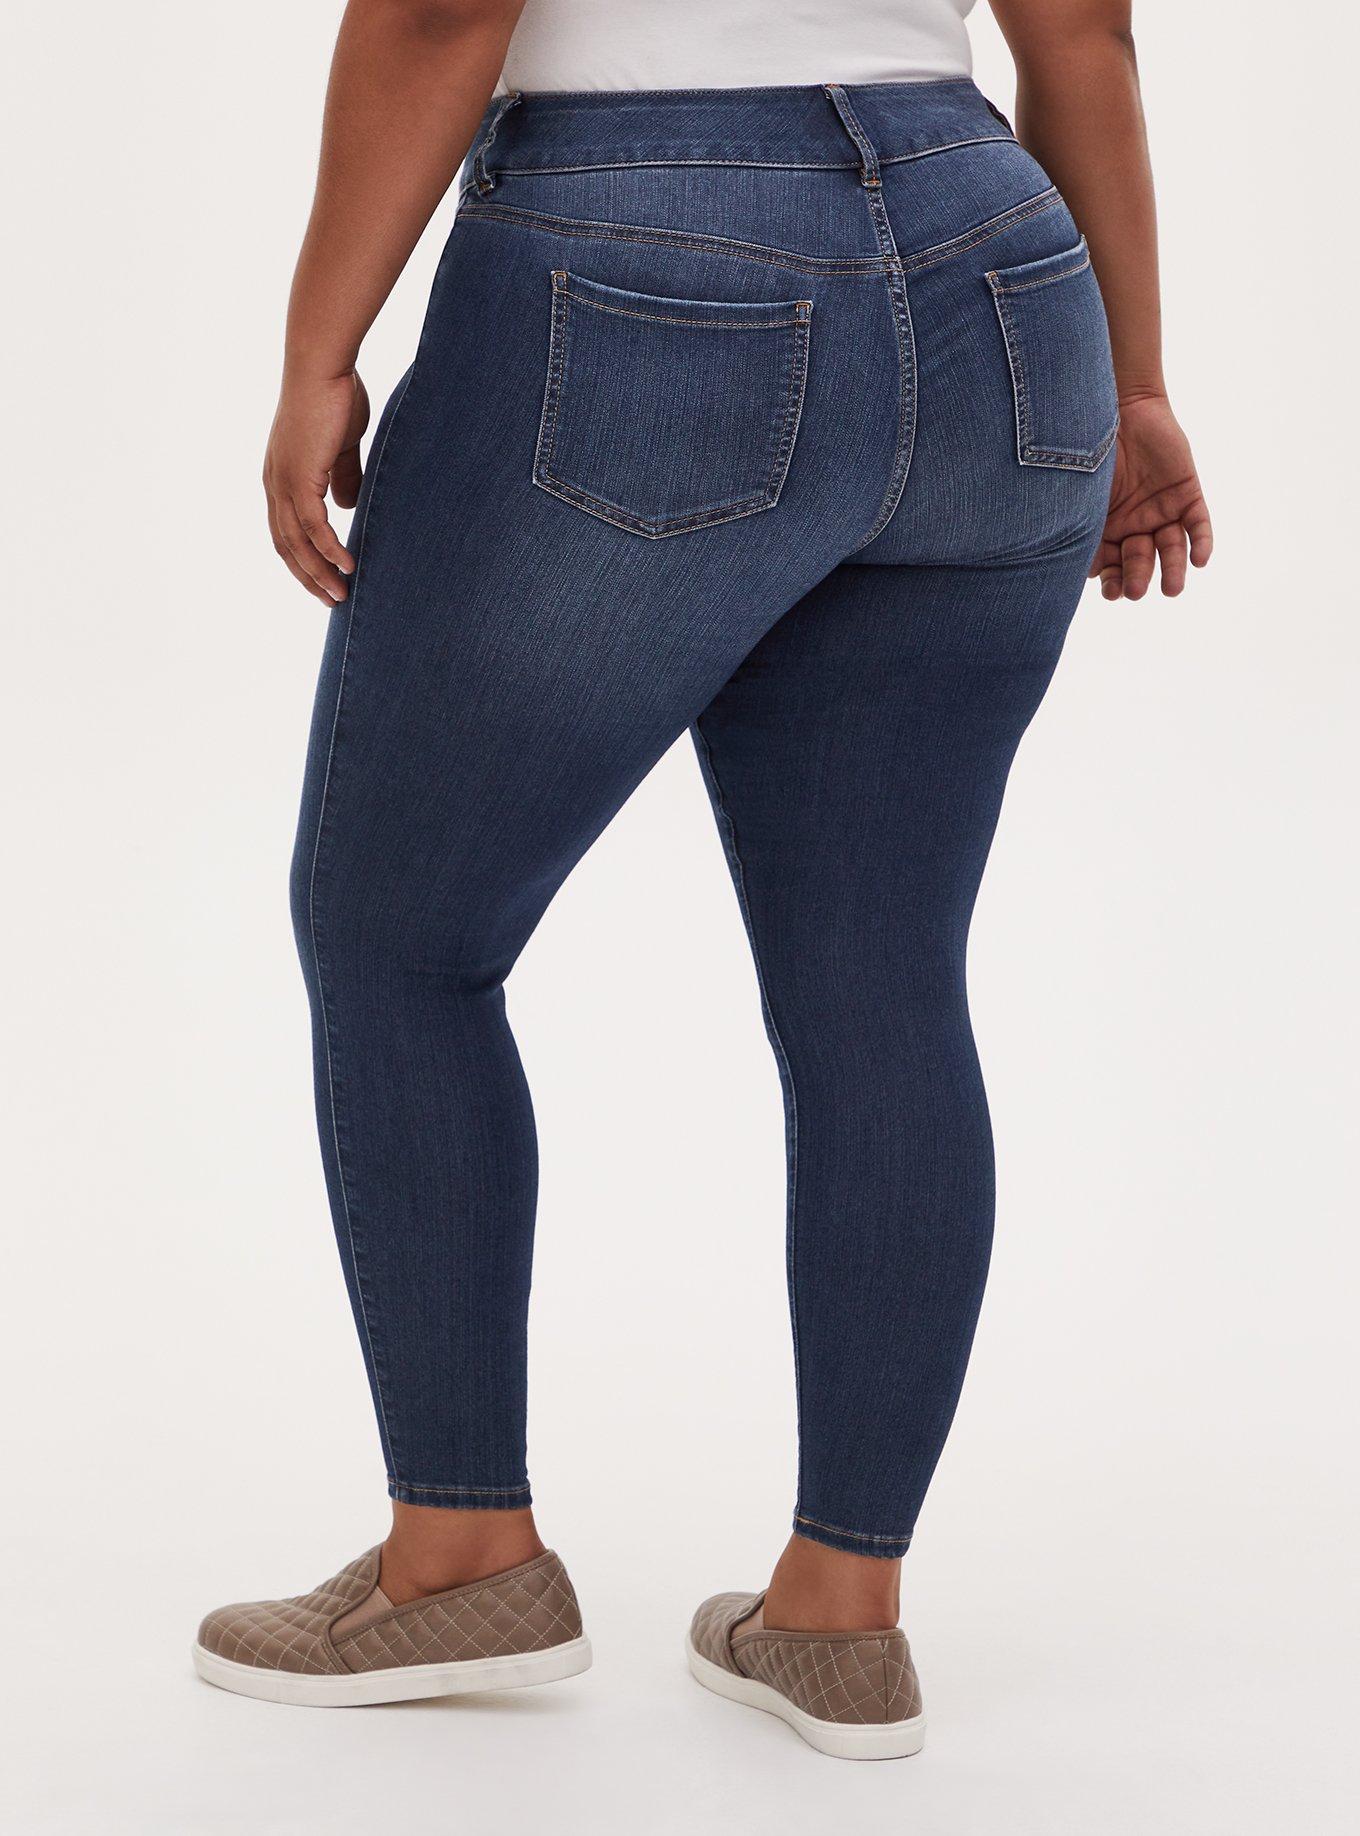 Plus - Jegging Skinny Super Stretch High-Rise Jean